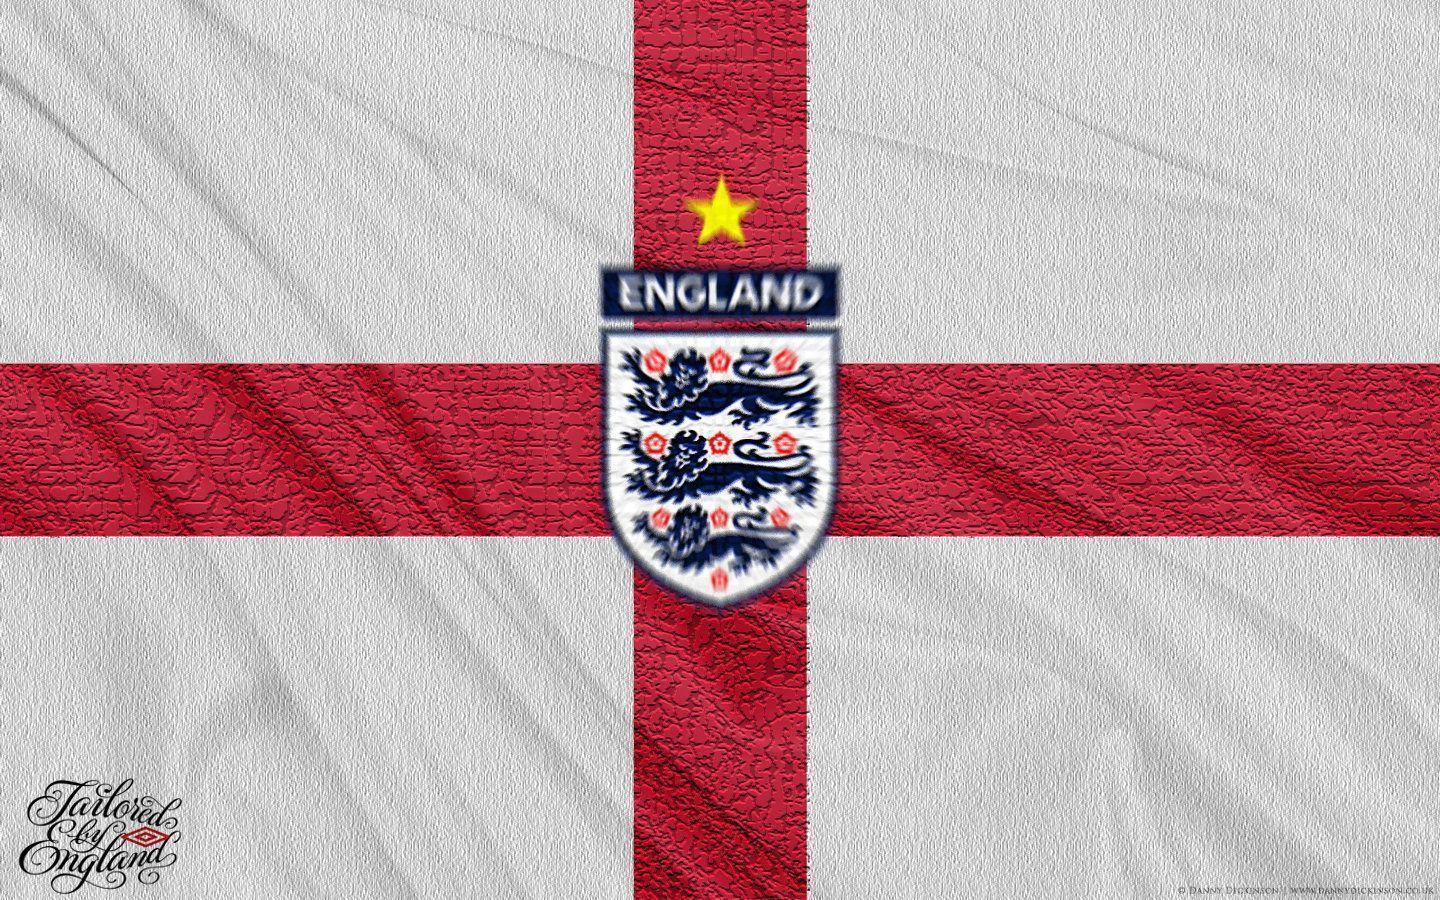 England National Football Team Wallpaper Wallpaper